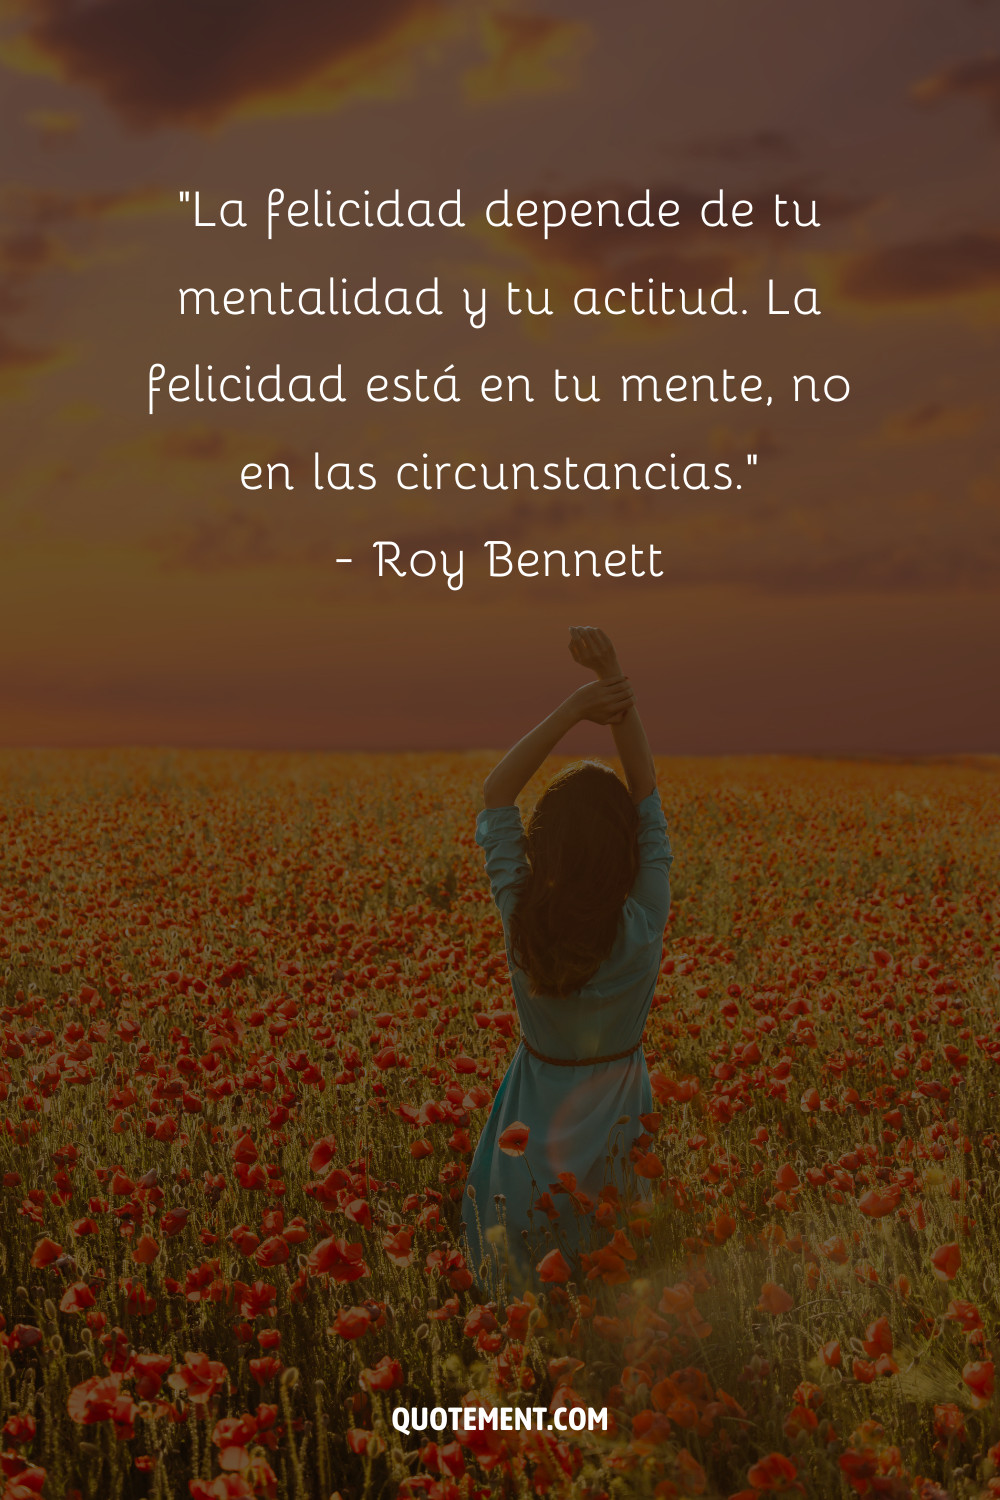 "La felicidad depende de tu mentalidad y tu actitud. La felicidad está en tu mente, no en las circunstancias". - Roy Bennett